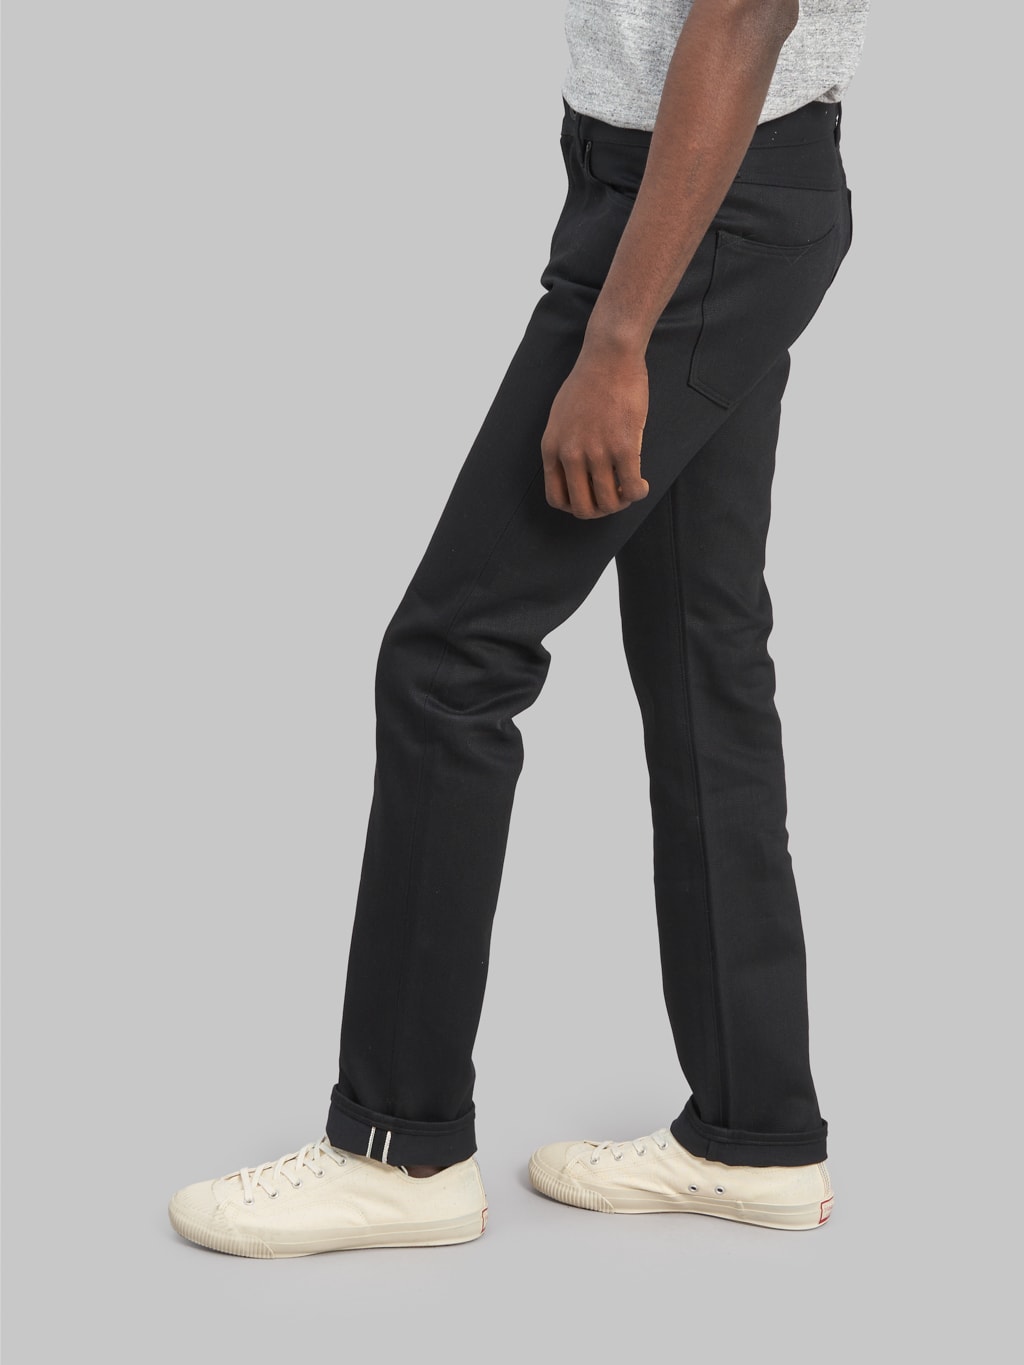 Stevenson Overall Big Sur 210 slim tapered jeans black back fit